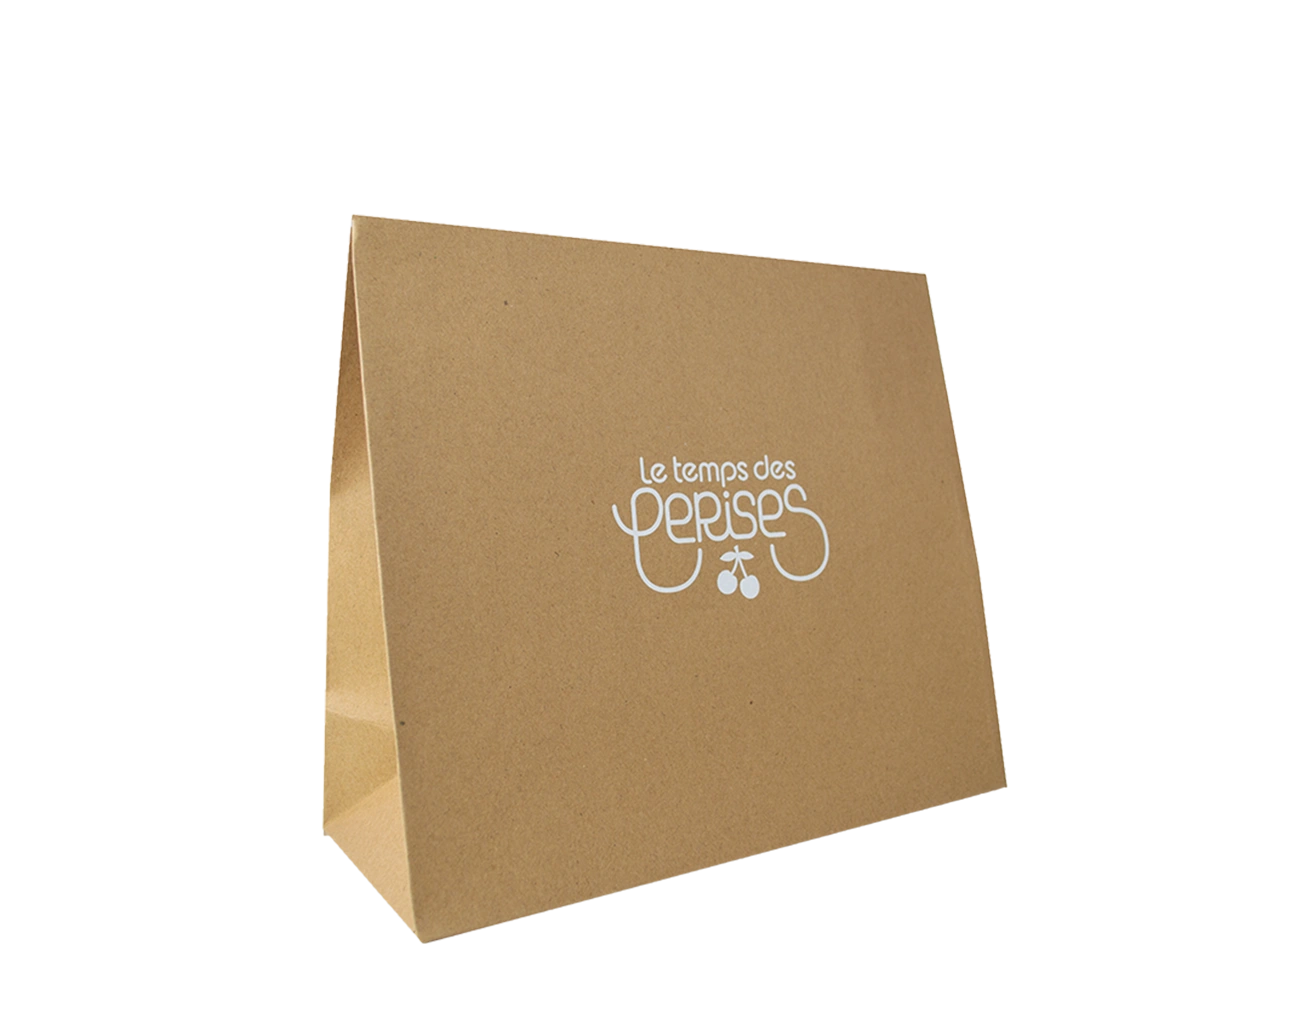 Voici une Pochette Cadeau Personnalisée pour Marque de Prêt-à-porter. Packaging sobre et élégant, cette pochette kraft est pratique et 100% écologique.